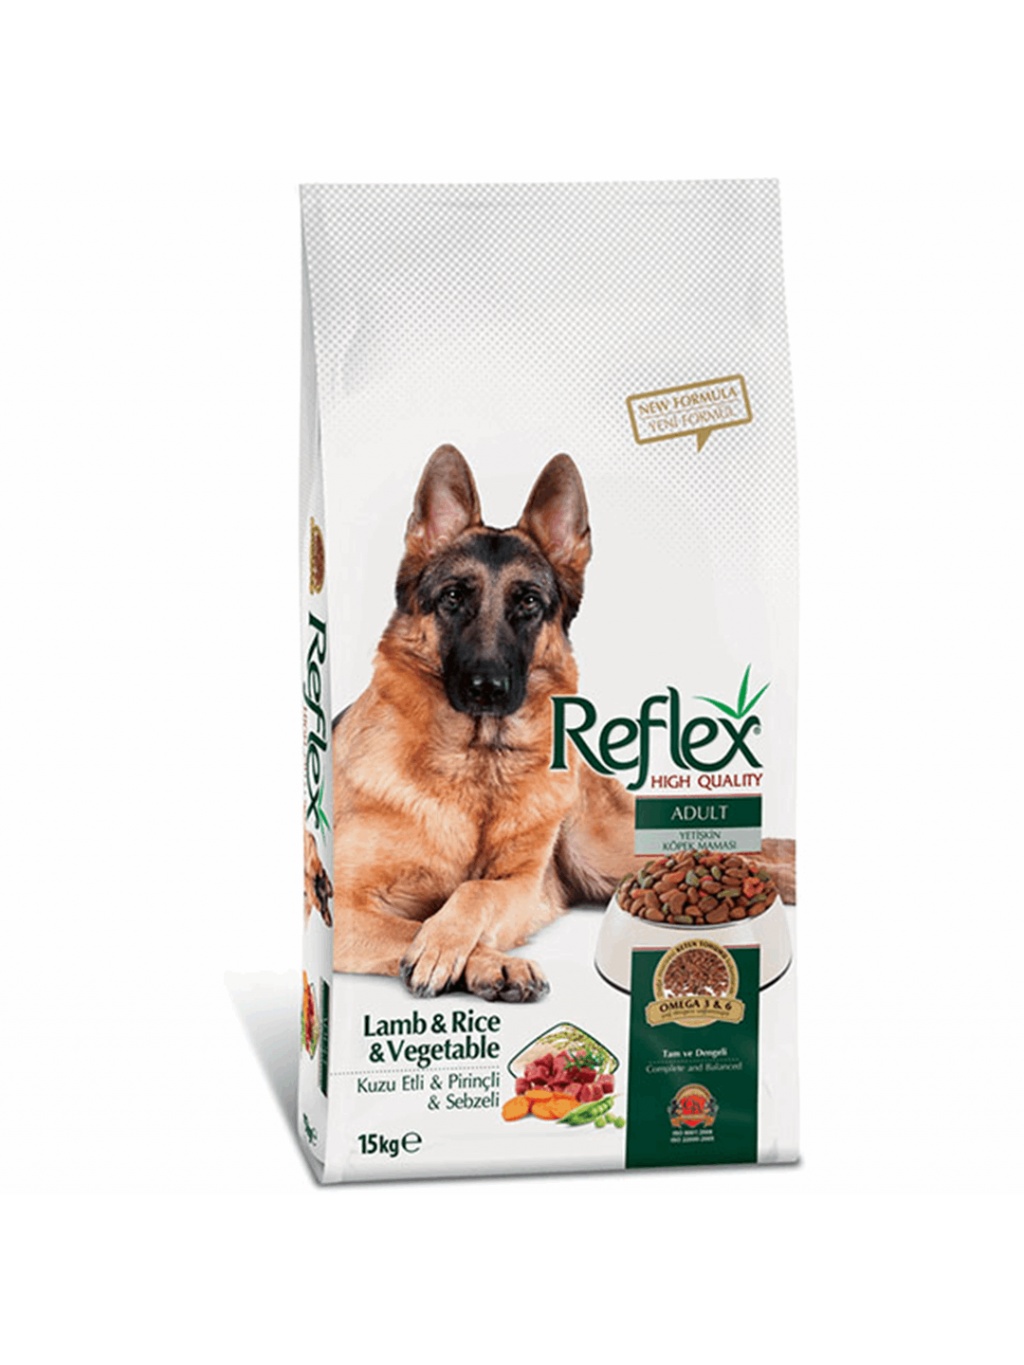 Reflex Adult Αρνί, Ρύζι & Λαχανικά 15KG για Ενήλικες Σκύλους